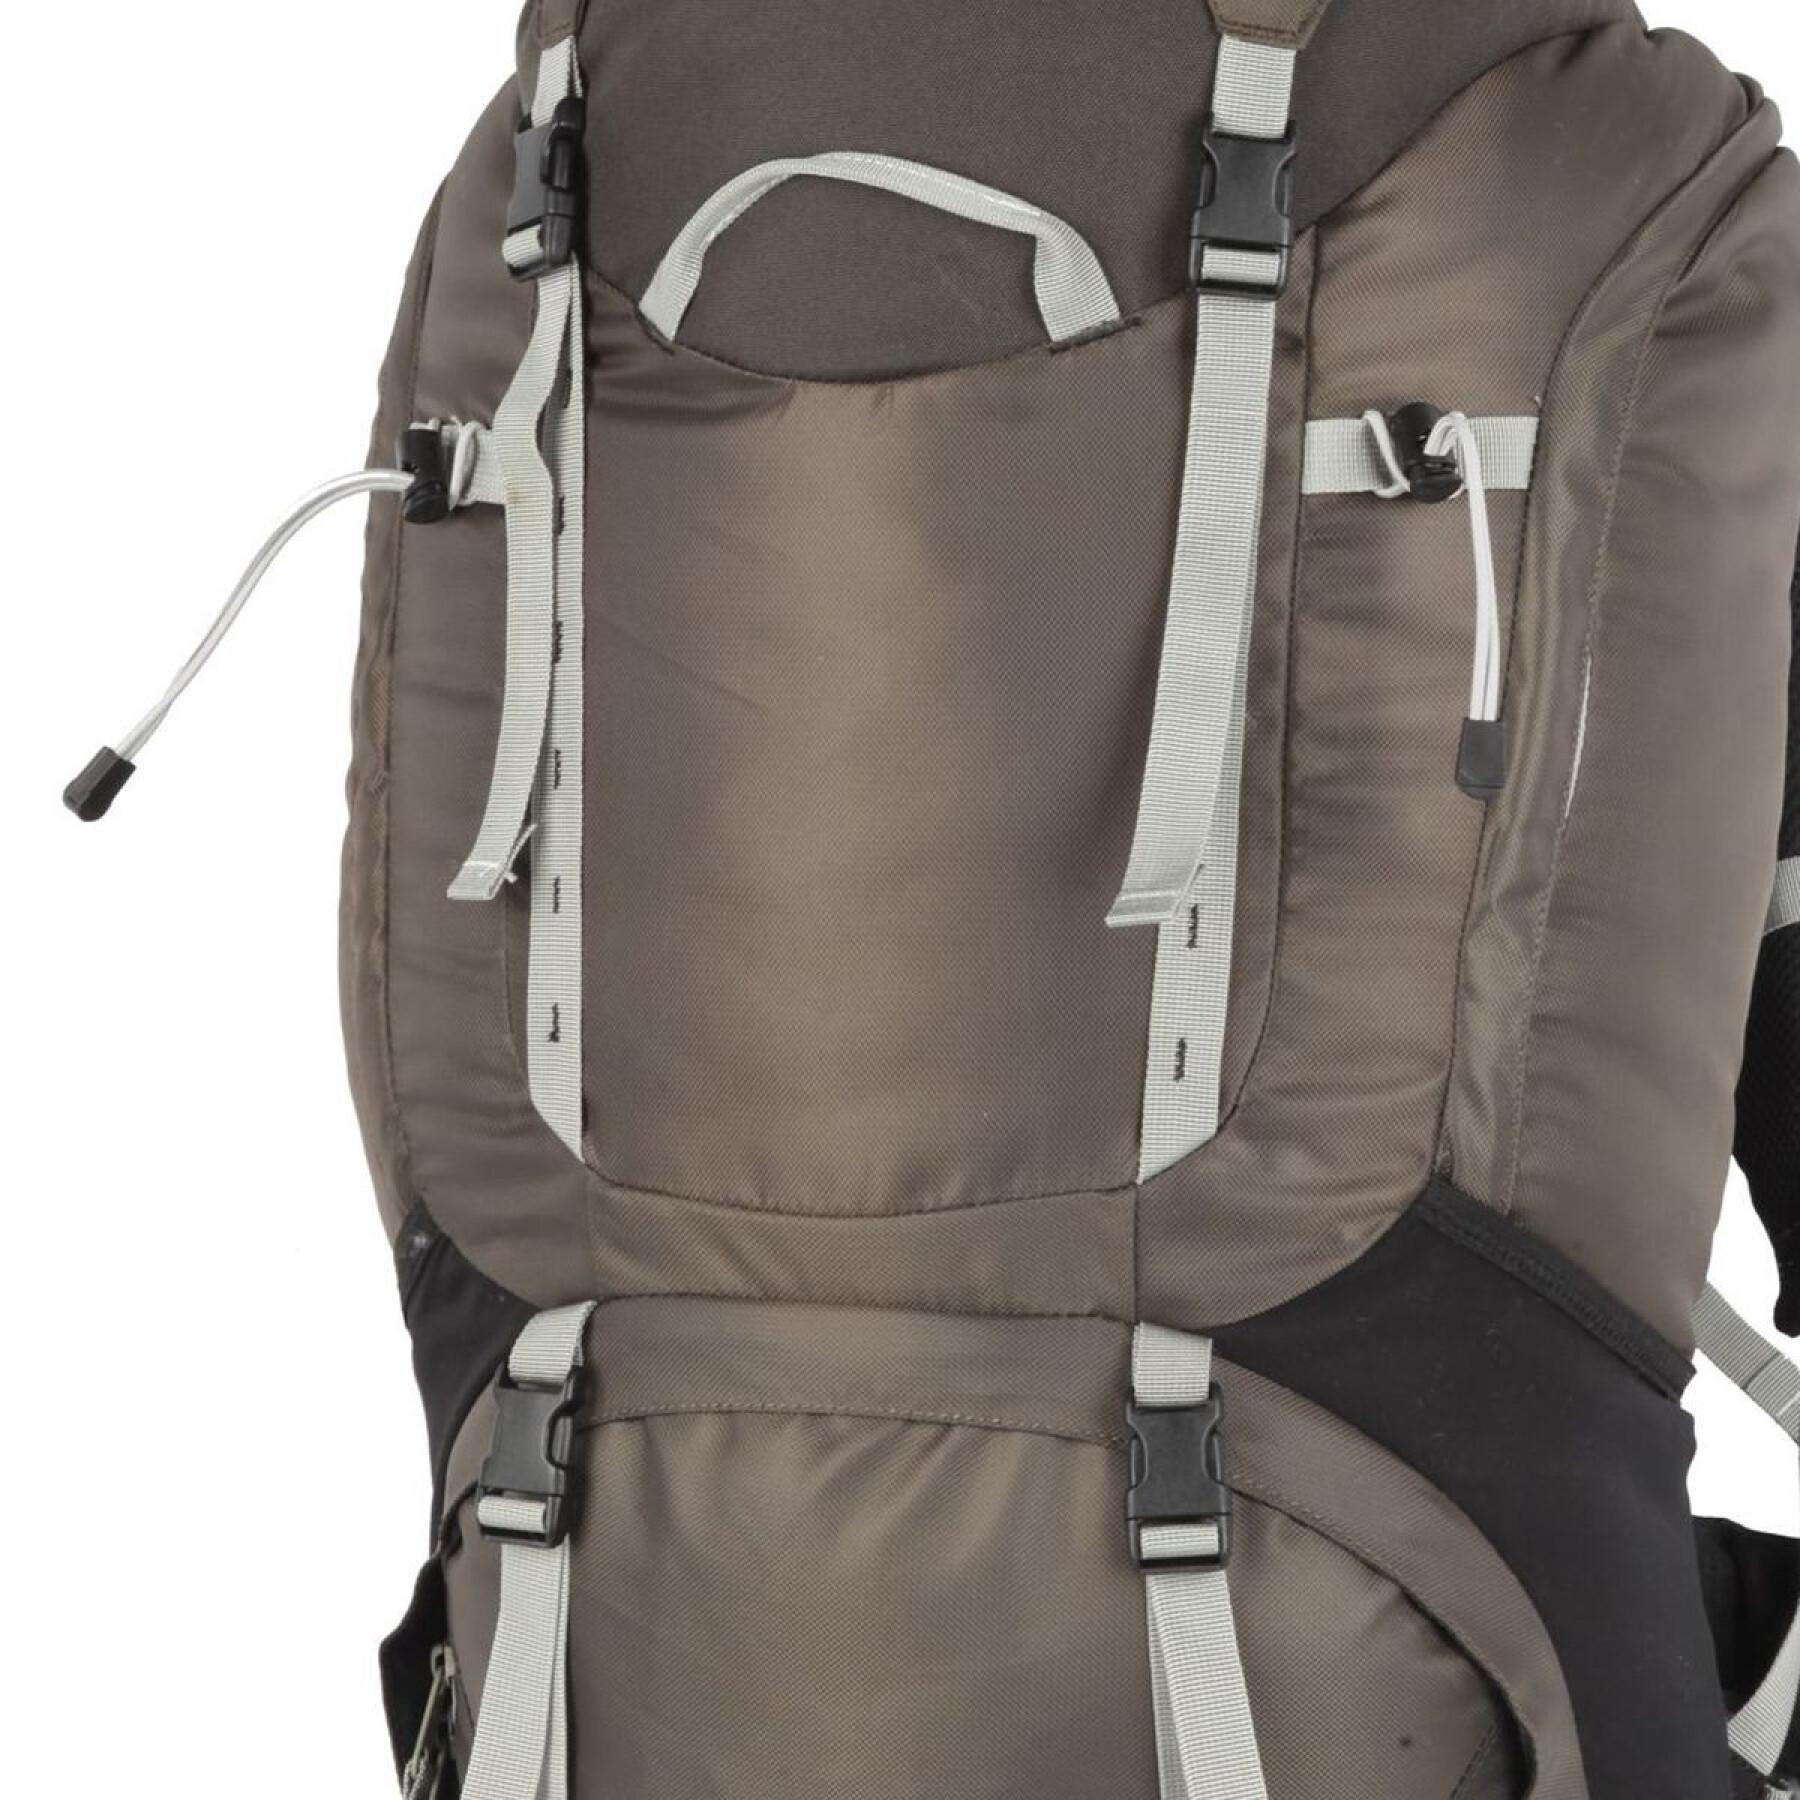 Backpack Wilsa Outdoor Trekker 75 L